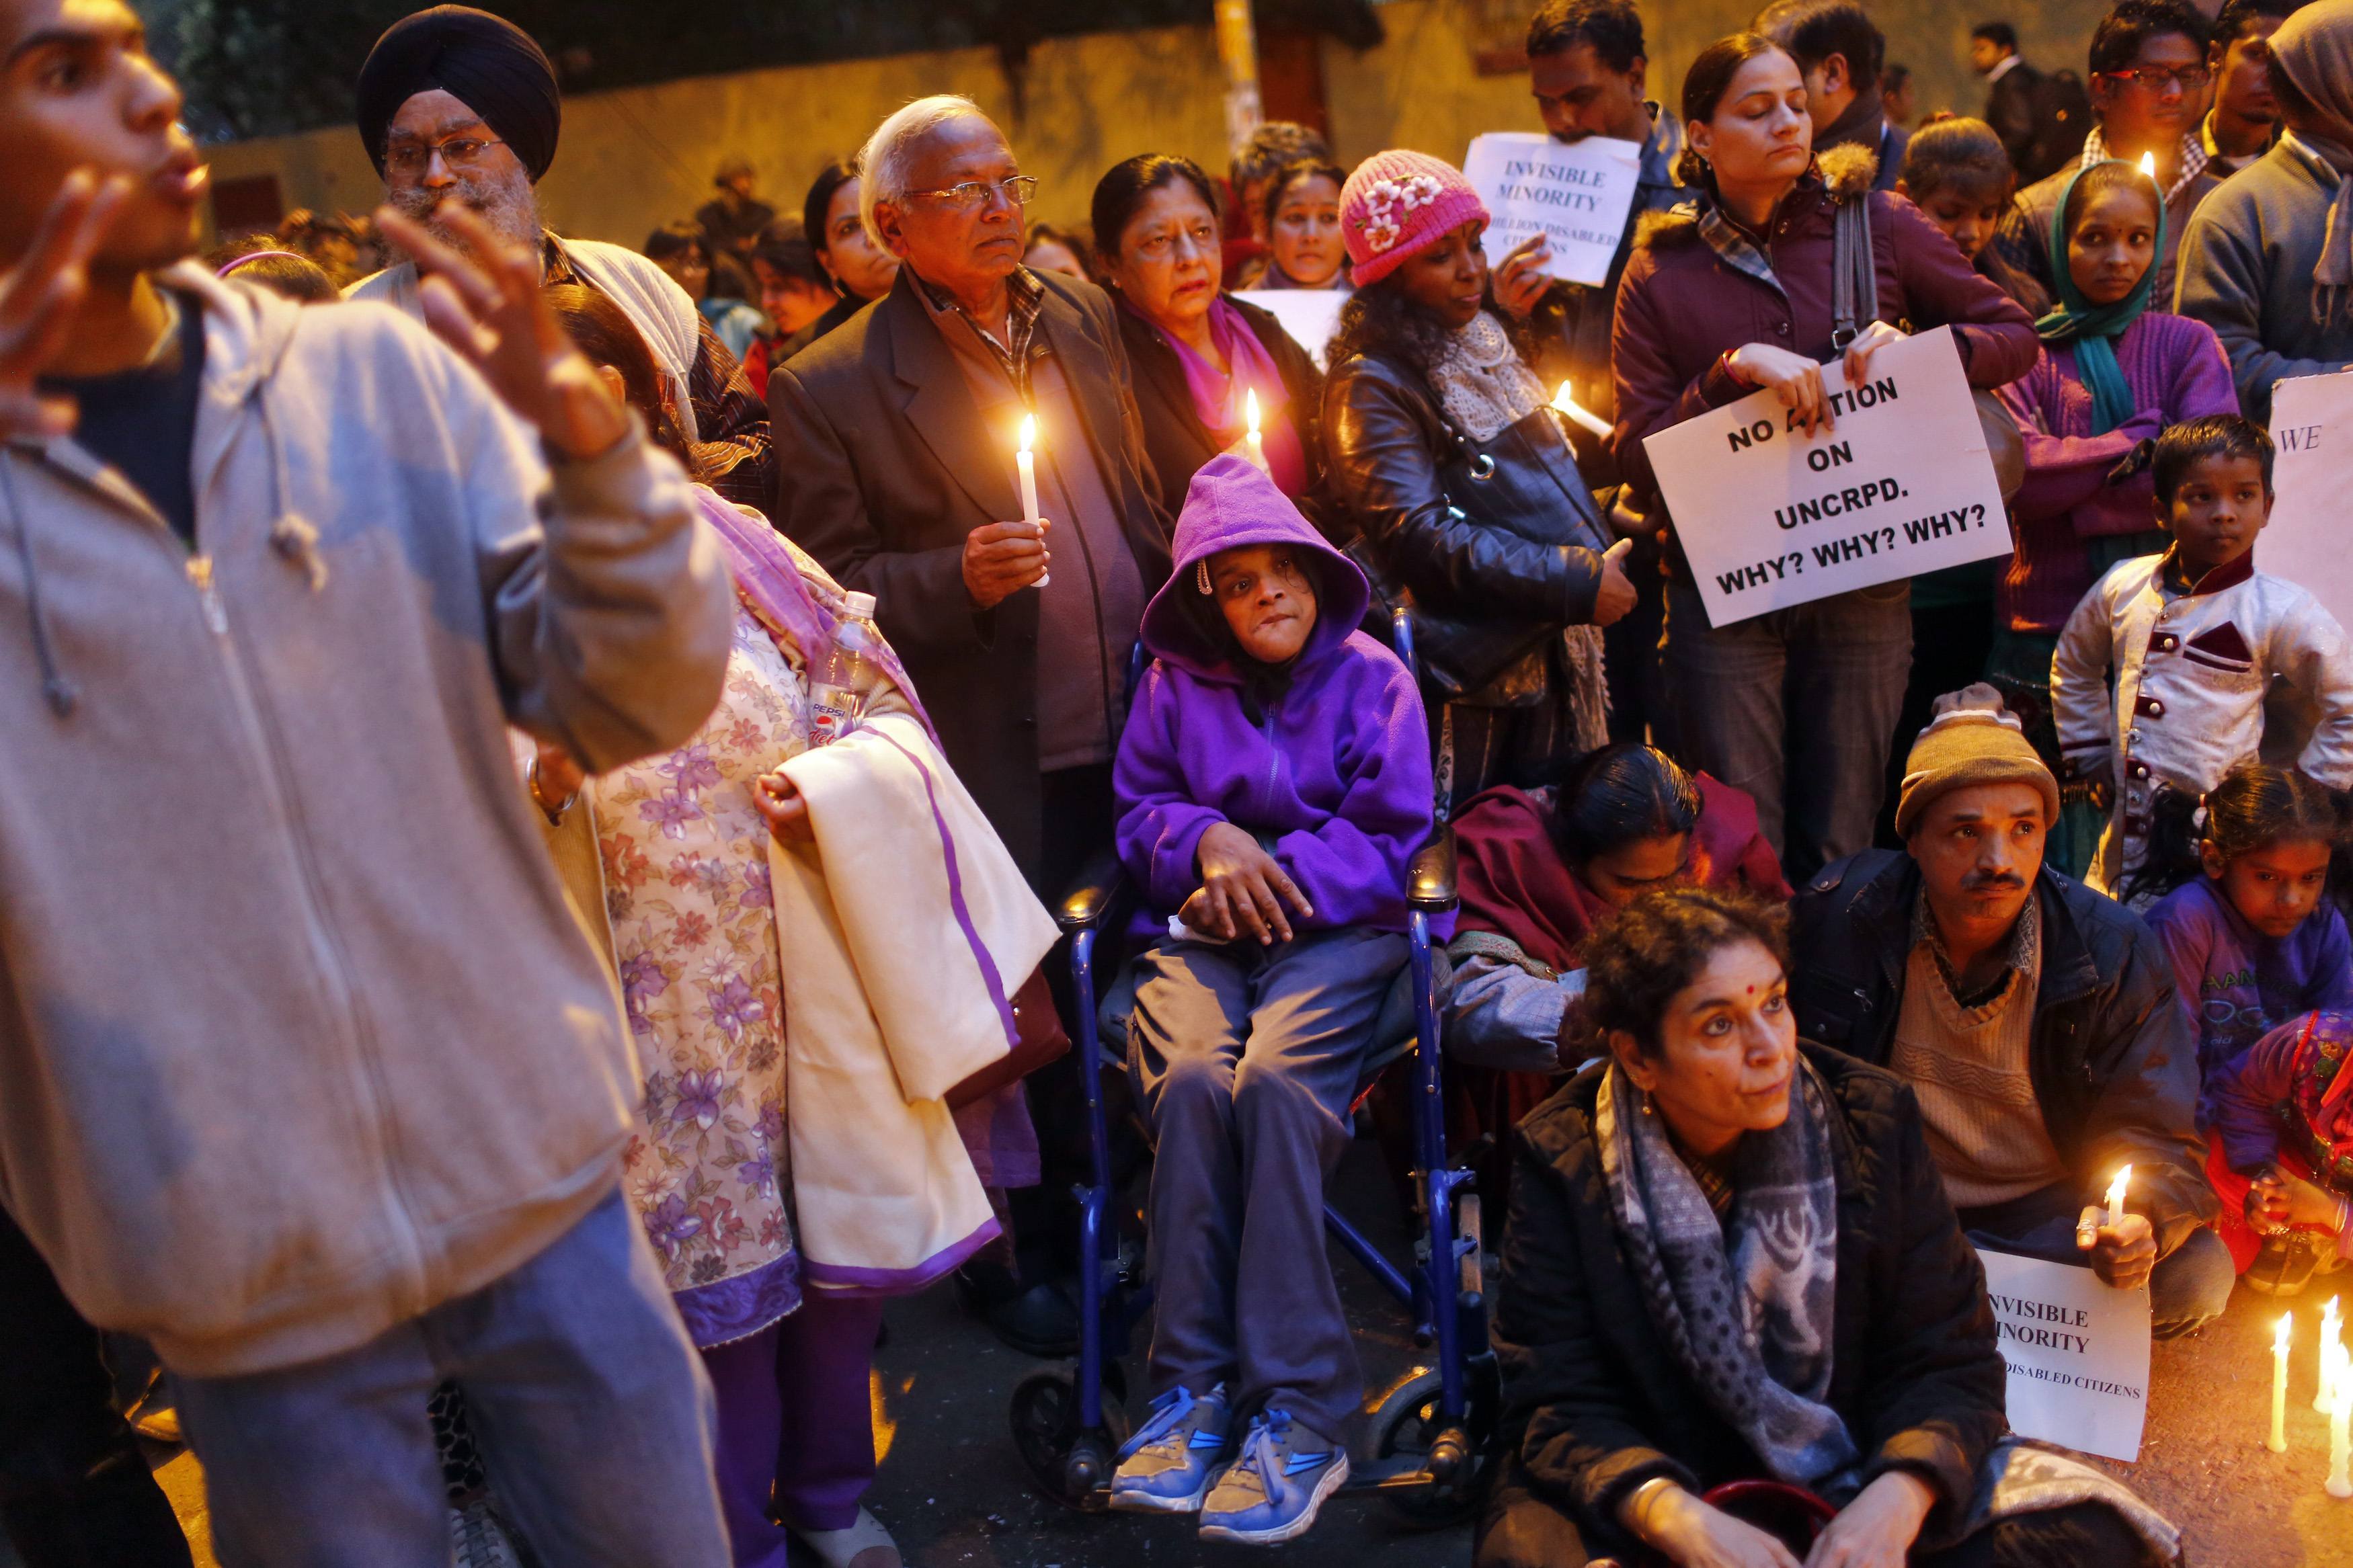 Ινδία: Διαδήλωση έξω από νοσοκομείο, όπου πέθανε έφηβη μετά τον ομαδικό βιασμό της